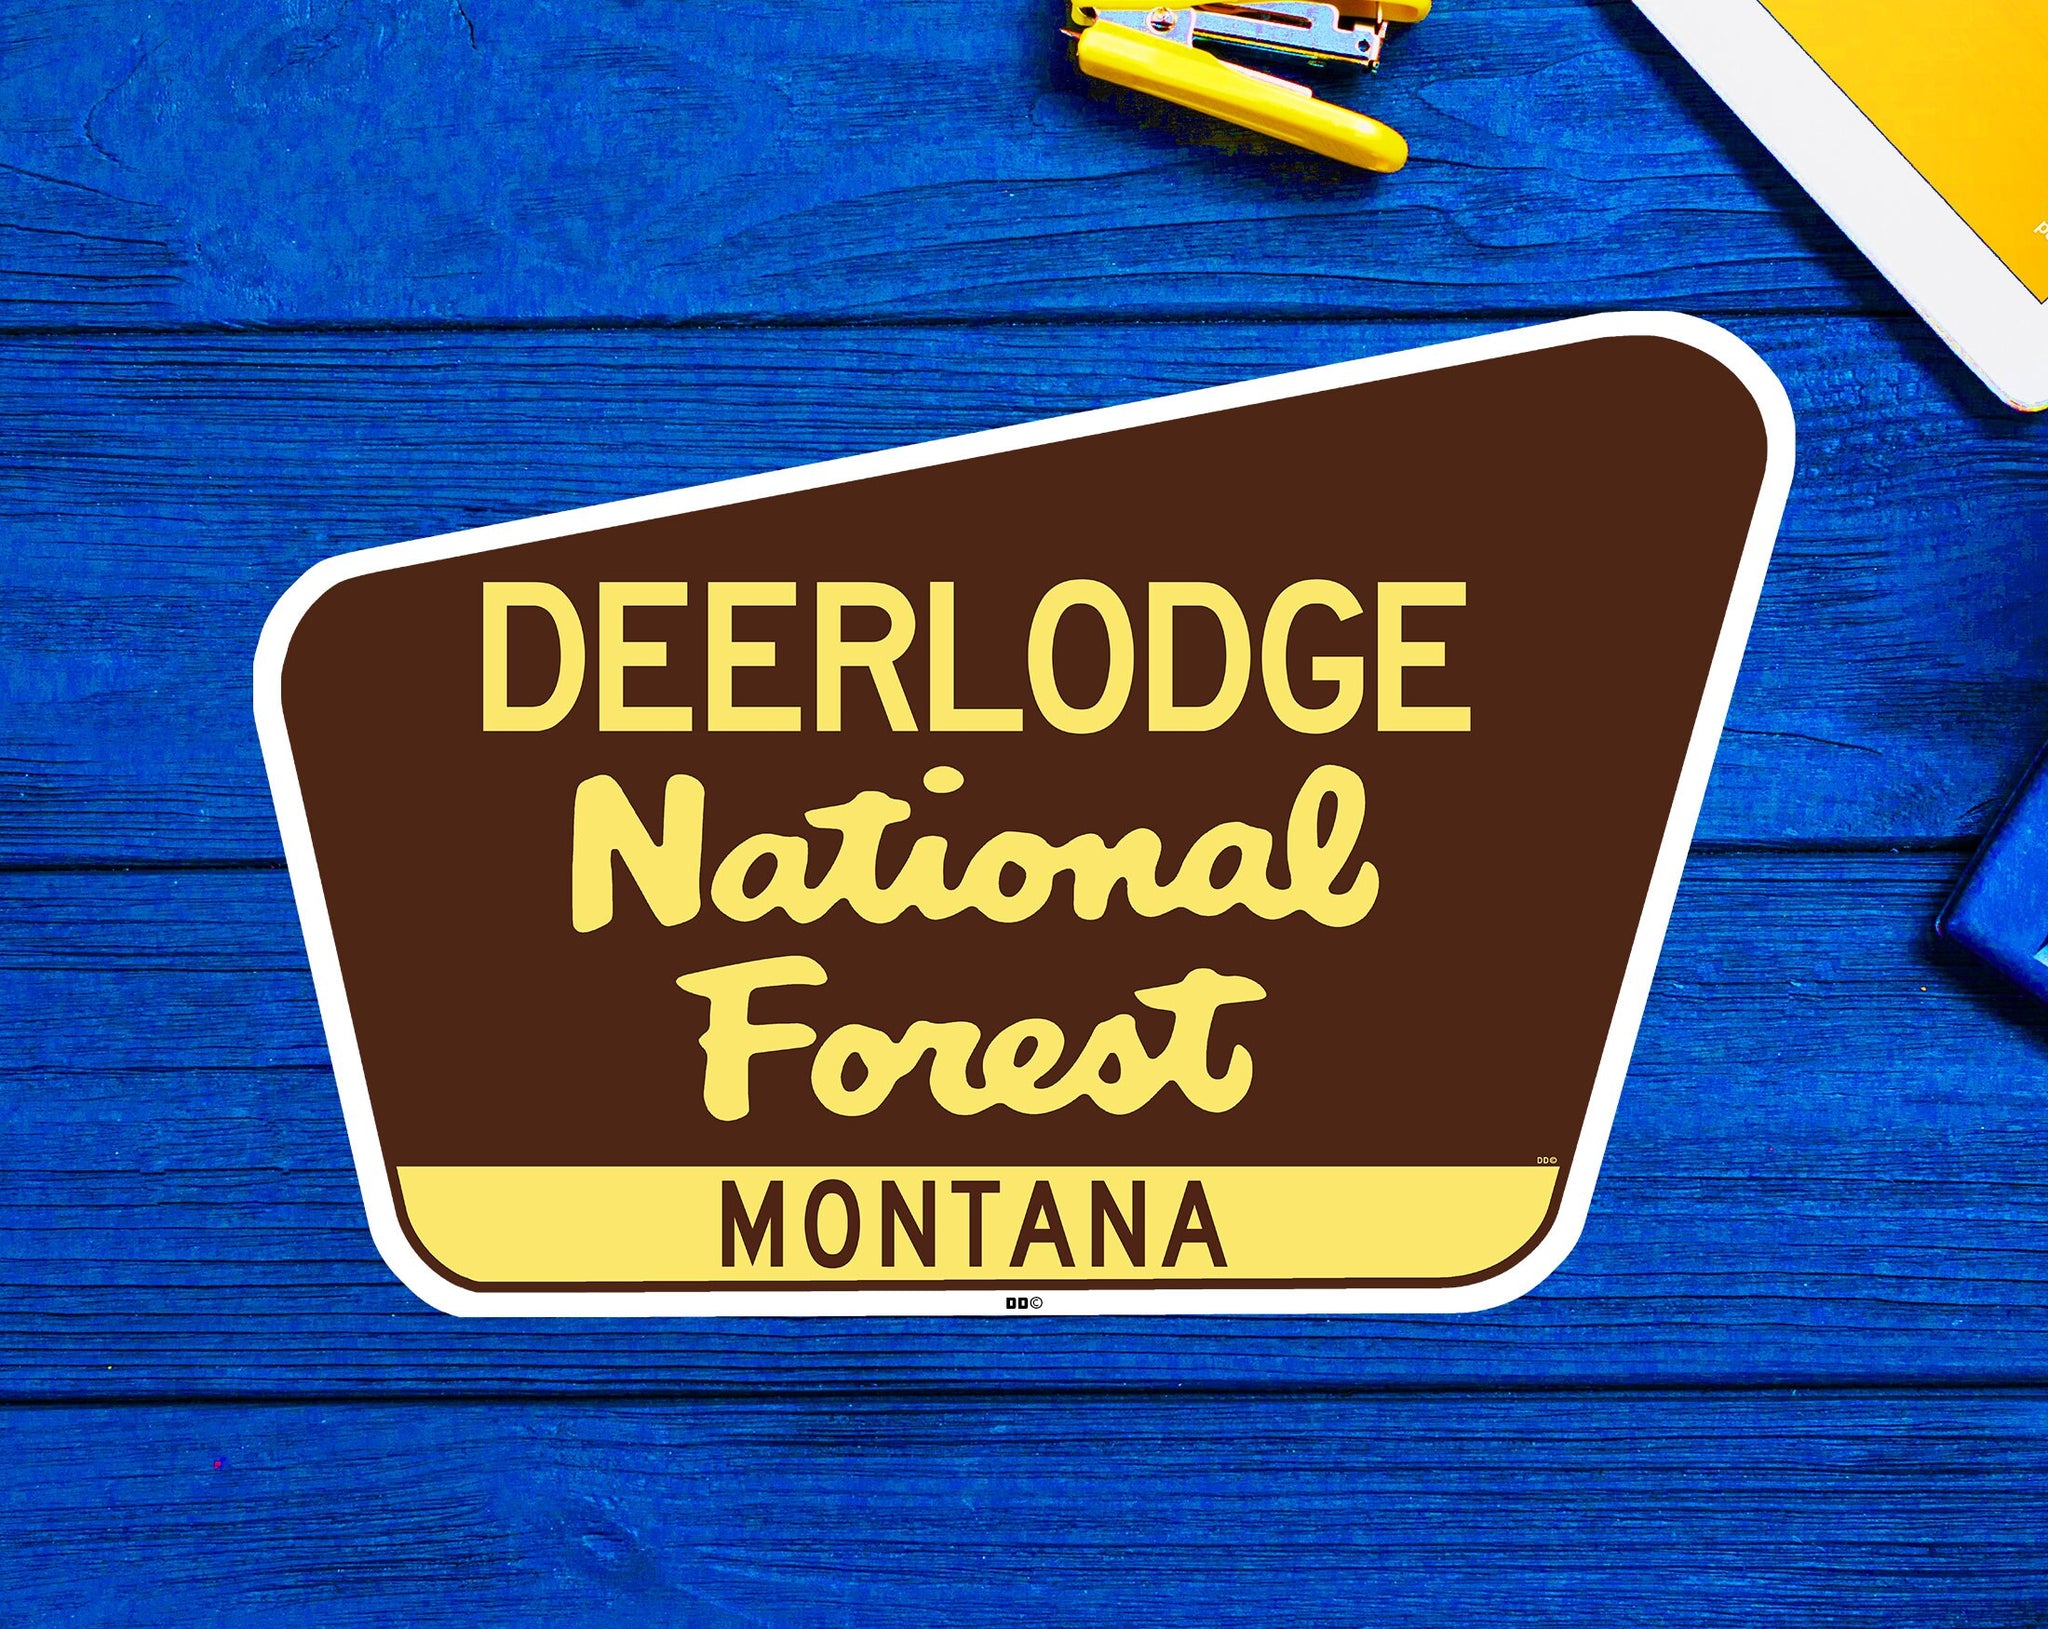 Deerlodge National Forest Decal Sticker 3.75" x 2.5" Montana Vinyl